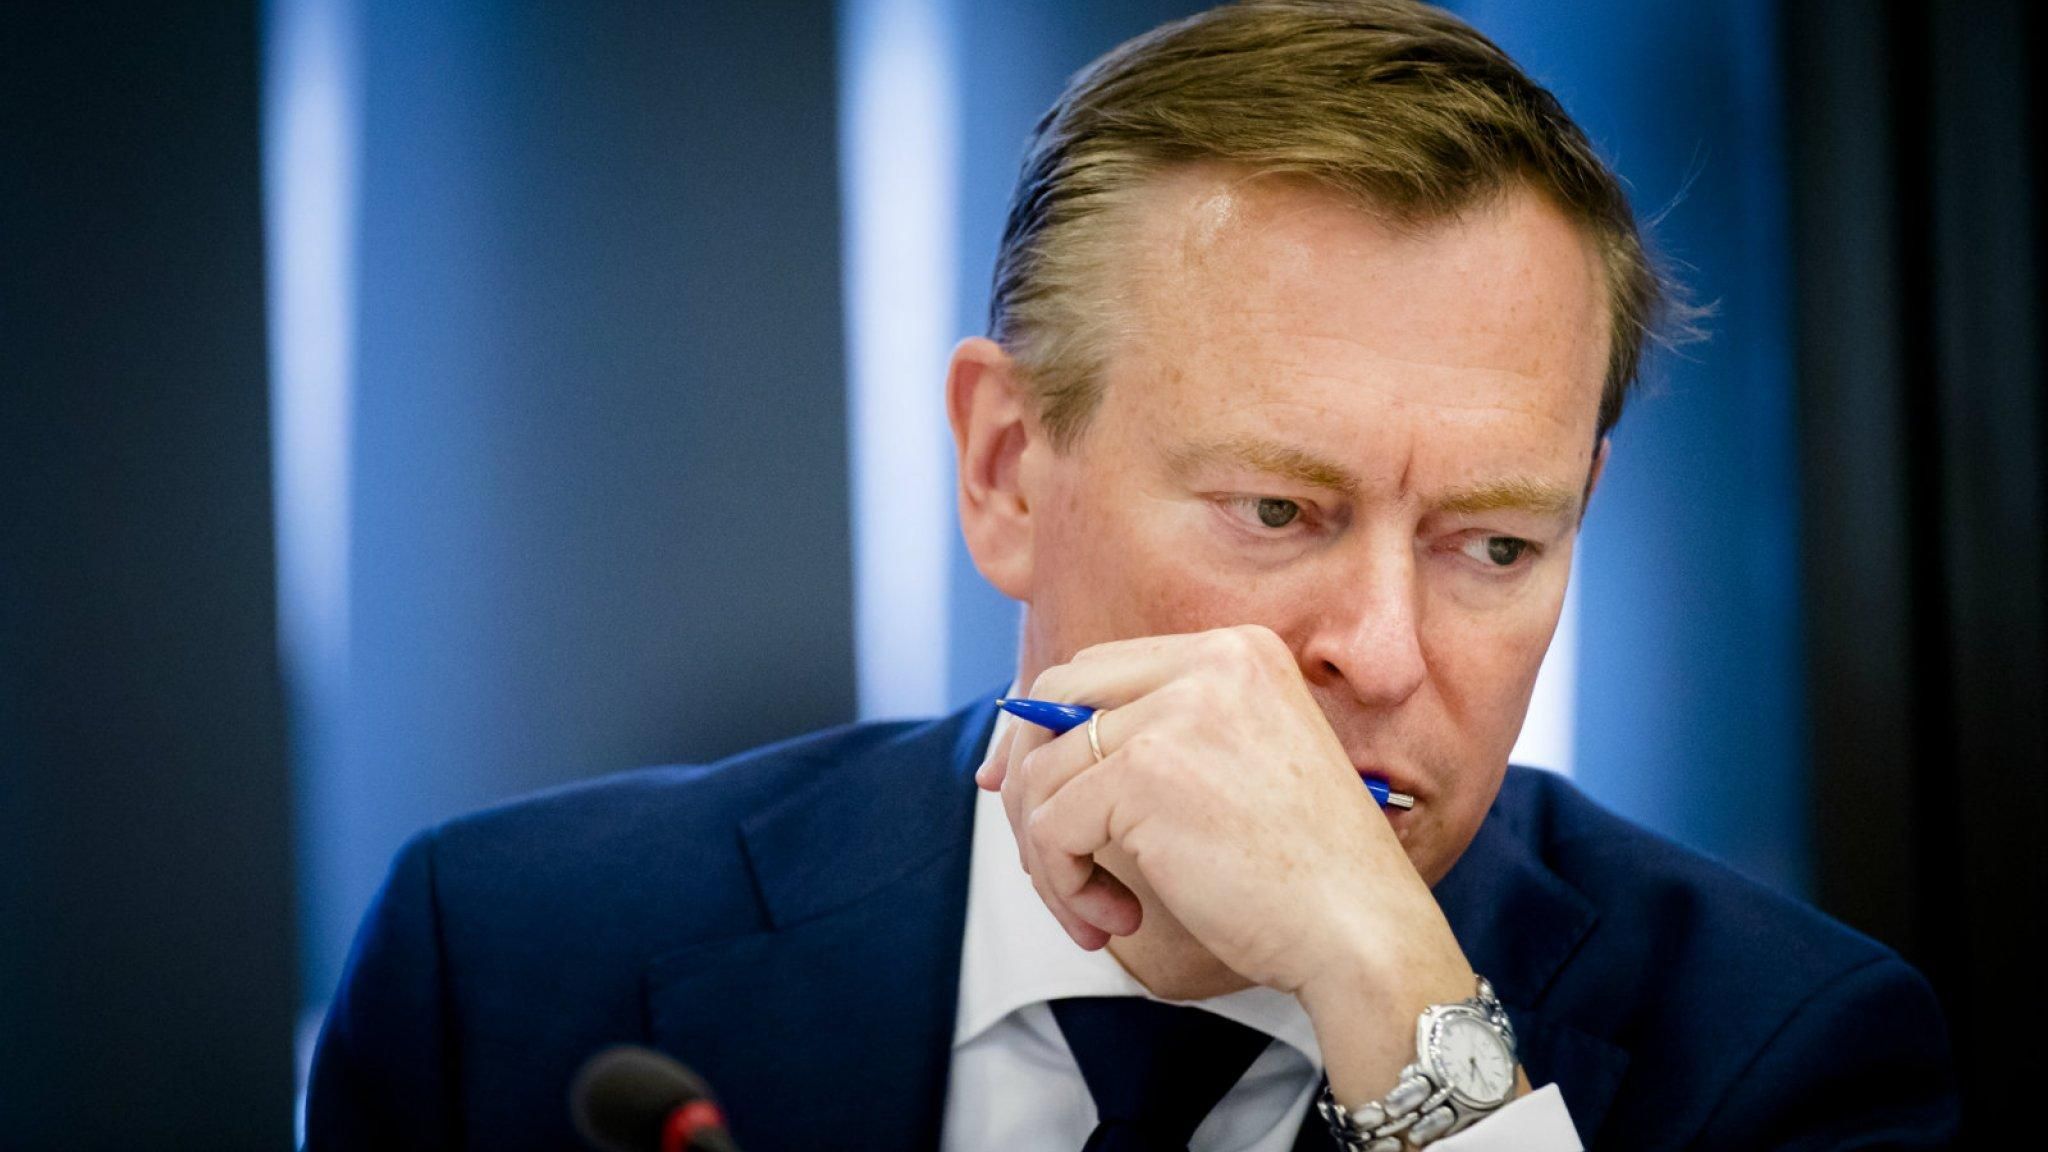 Министр здравоохранения Нидерландов потерял сознание во время дискуссии о коронавирусе: видео